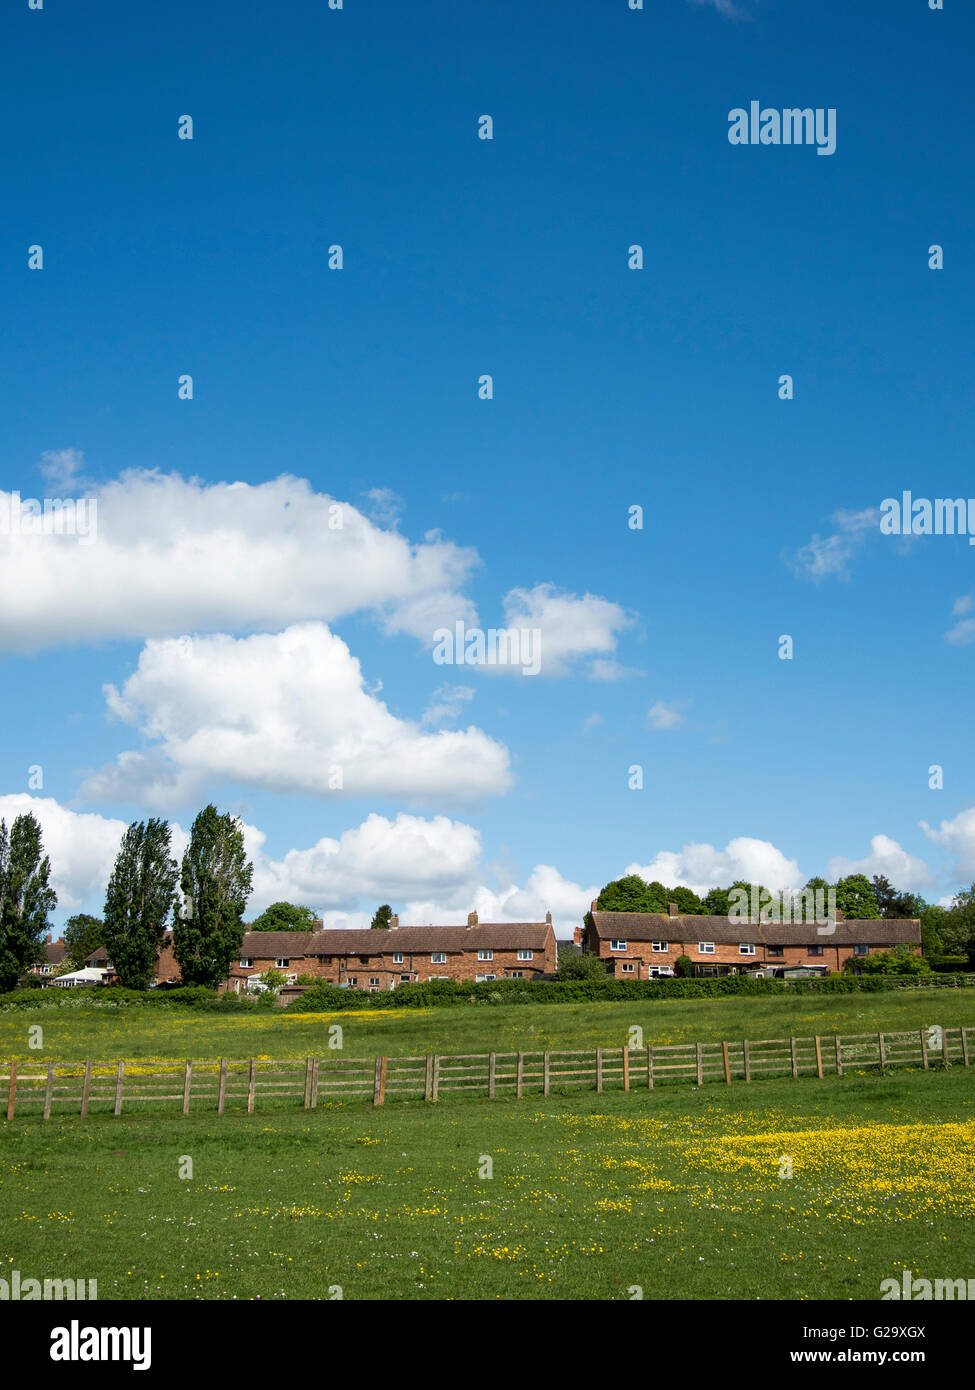 A housing development encroaching on fields in Milton Keynes, England. Stock Photo